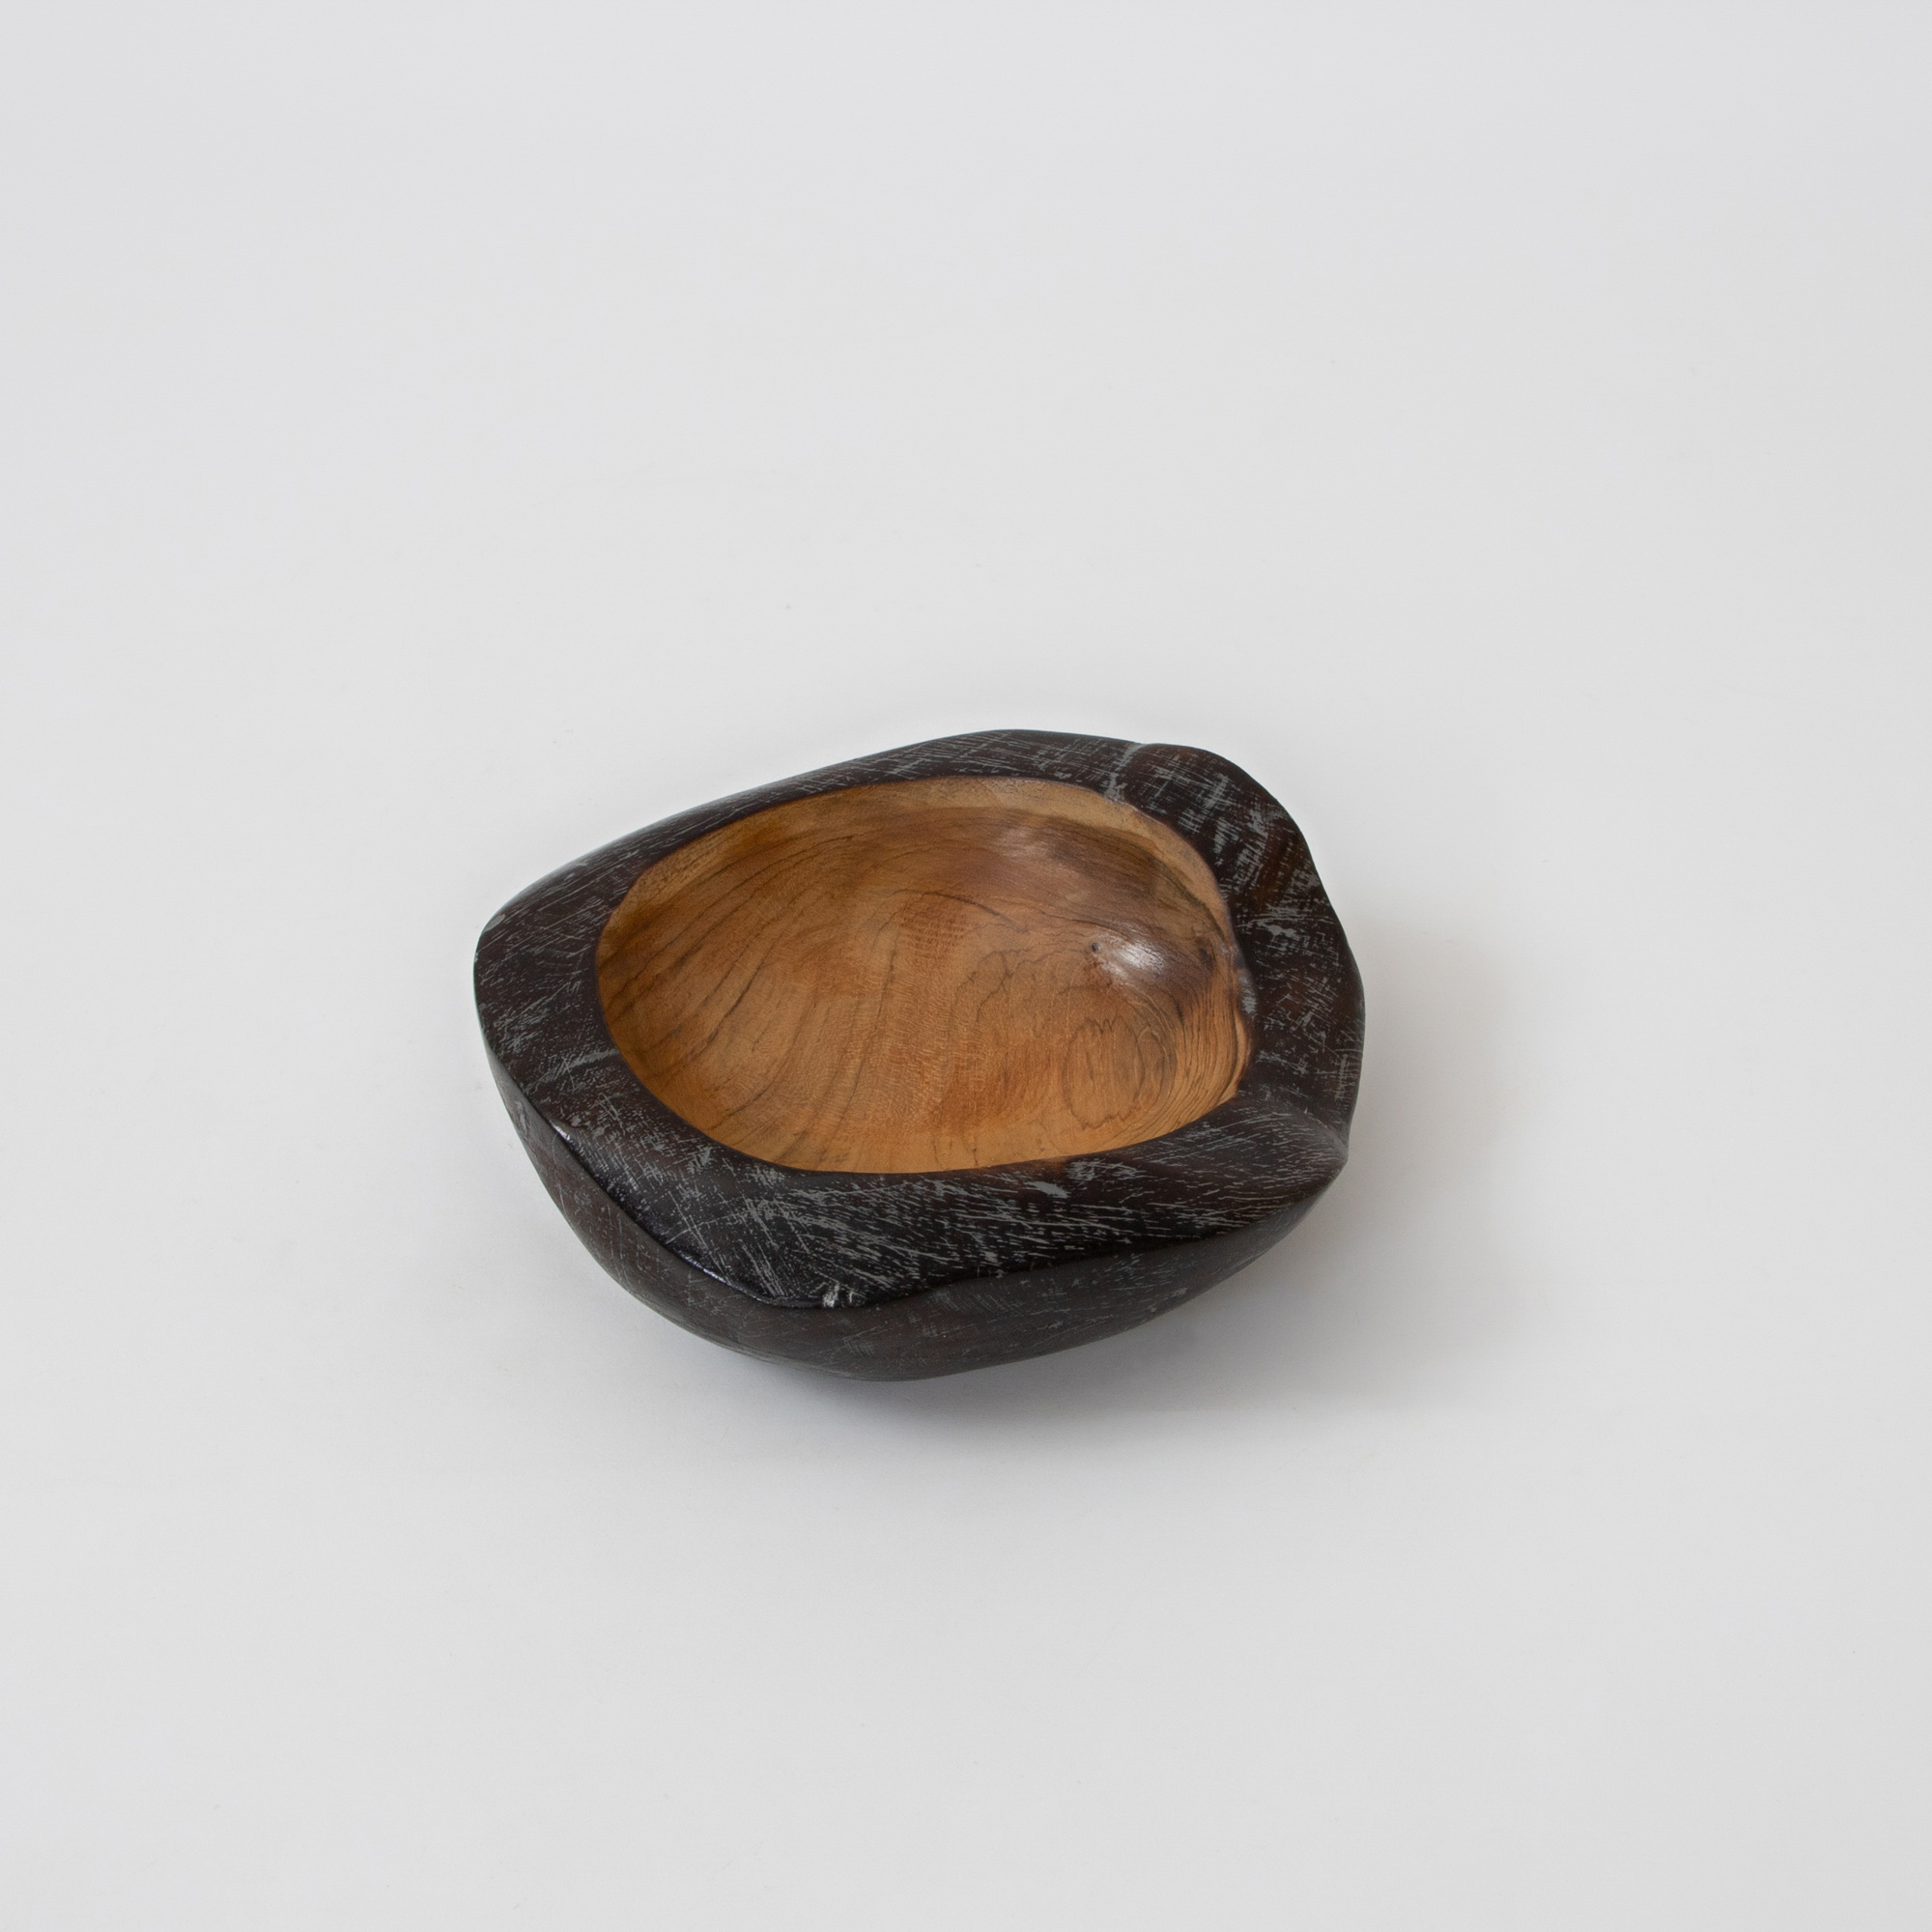 Cairo Ebony Wooden Bowl - Small